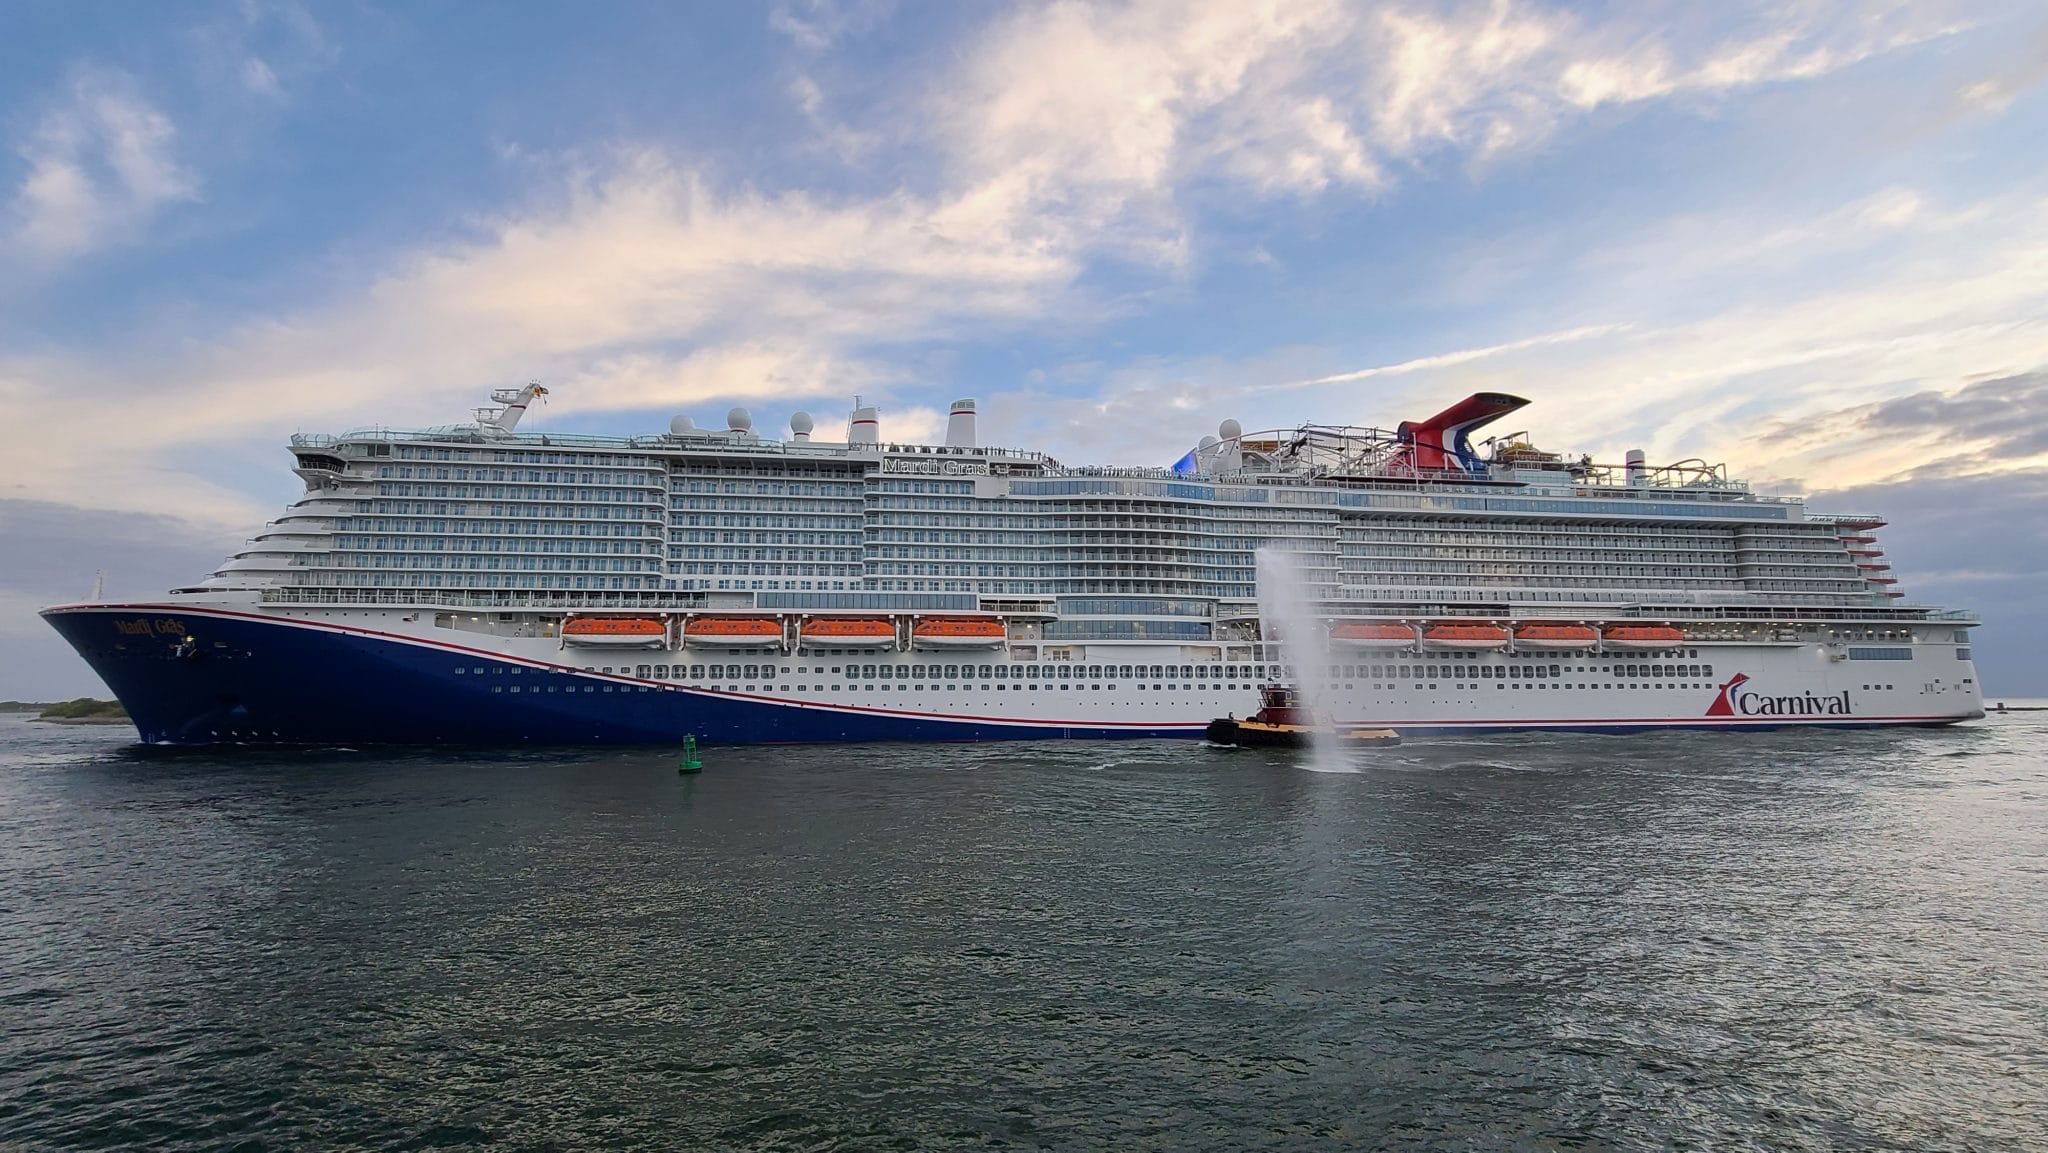 Carnival cruise line возобновит часть круизных маршрутов 1 августа